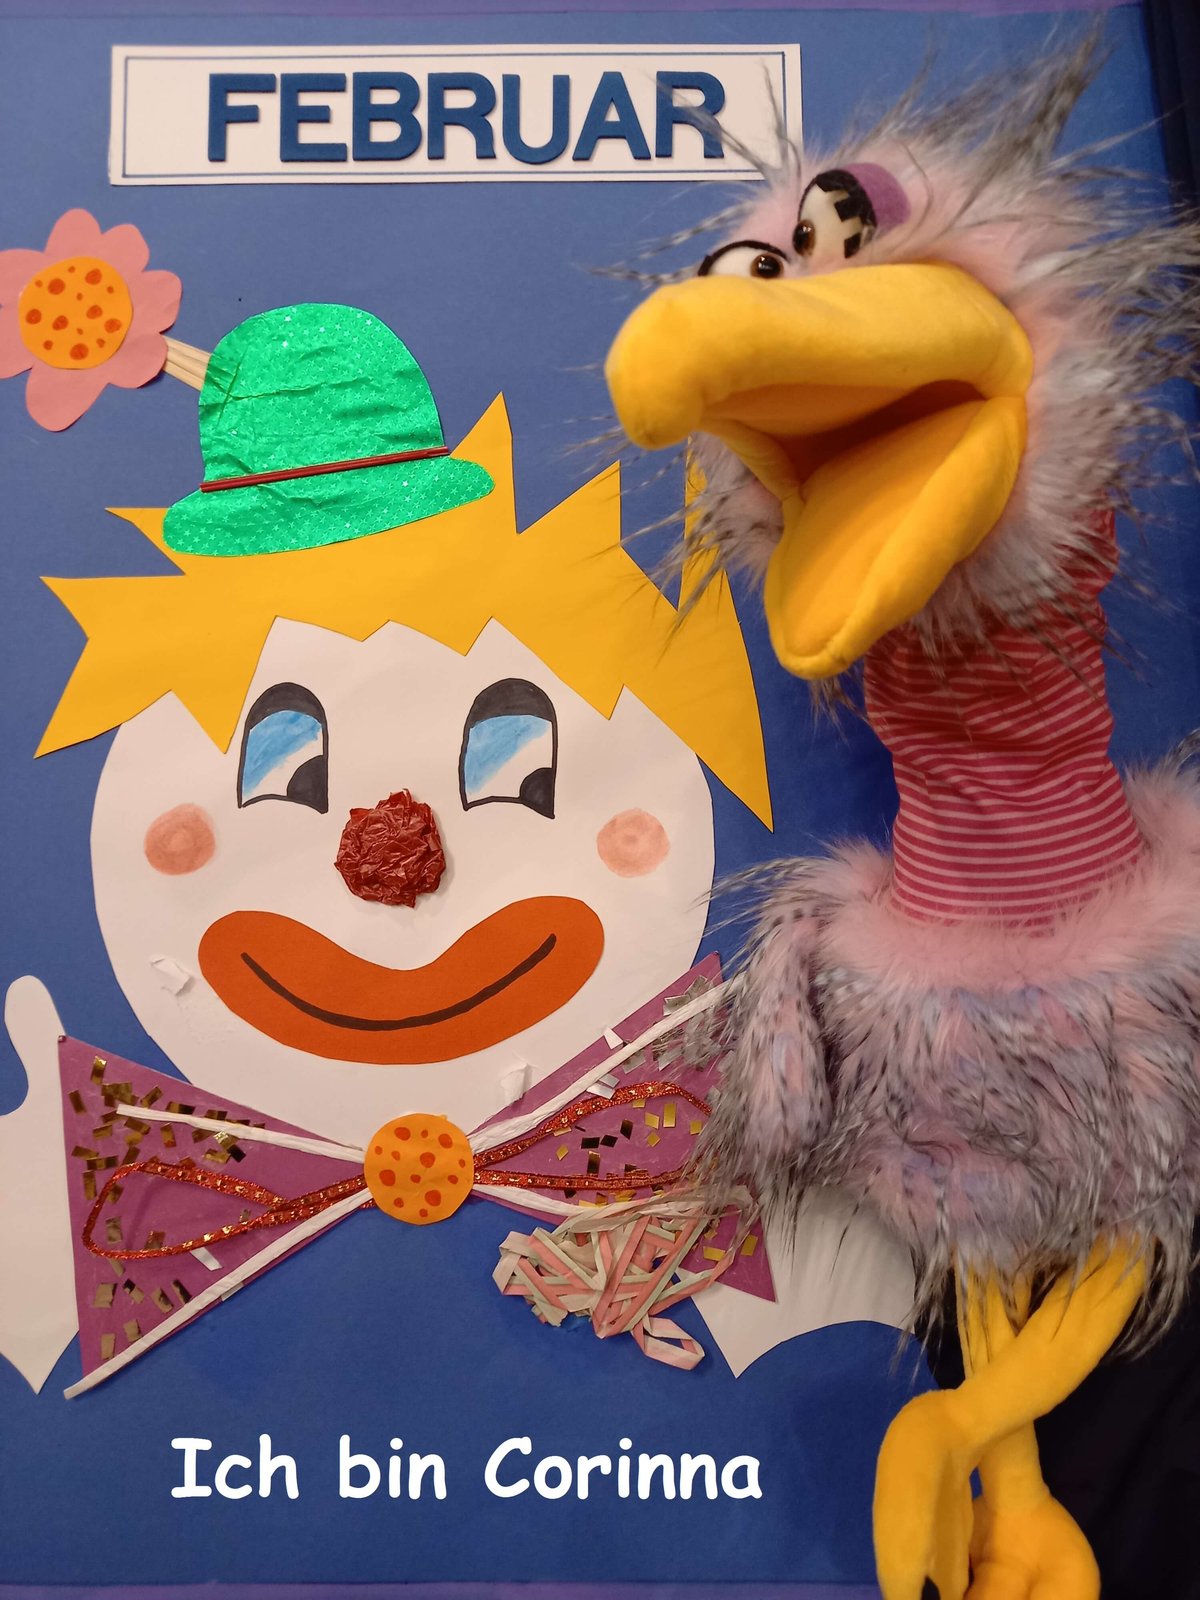 Zu sehen ist ein Faschings-Clown und eine Huhn-Handpuppe